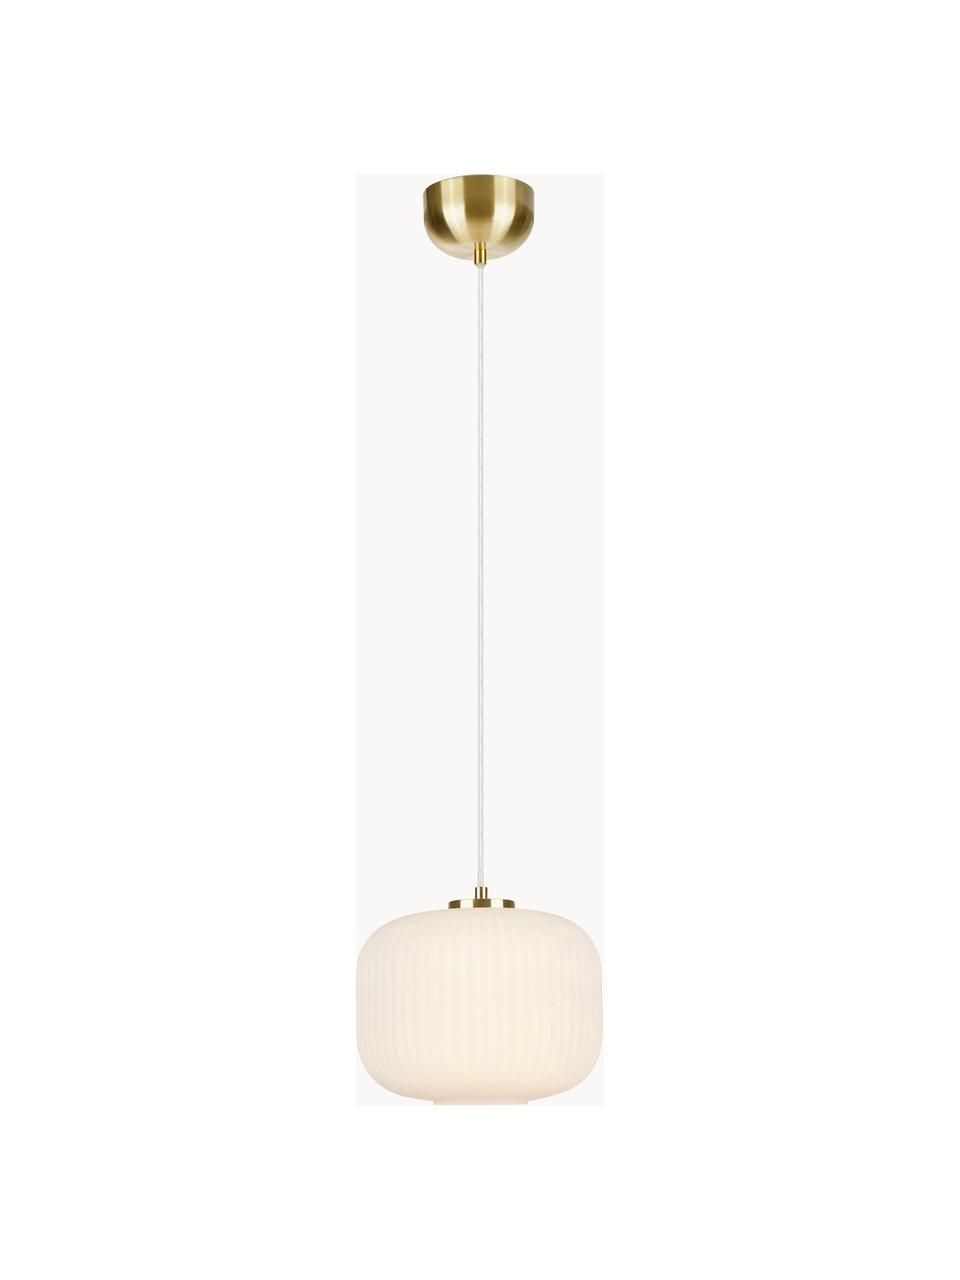 Kleine hanglamp Sober met glazen lampenkap, Lampenkap: glas, Decoratie: geborsteld metaal, Wit, Ø 25 x H 22 cm